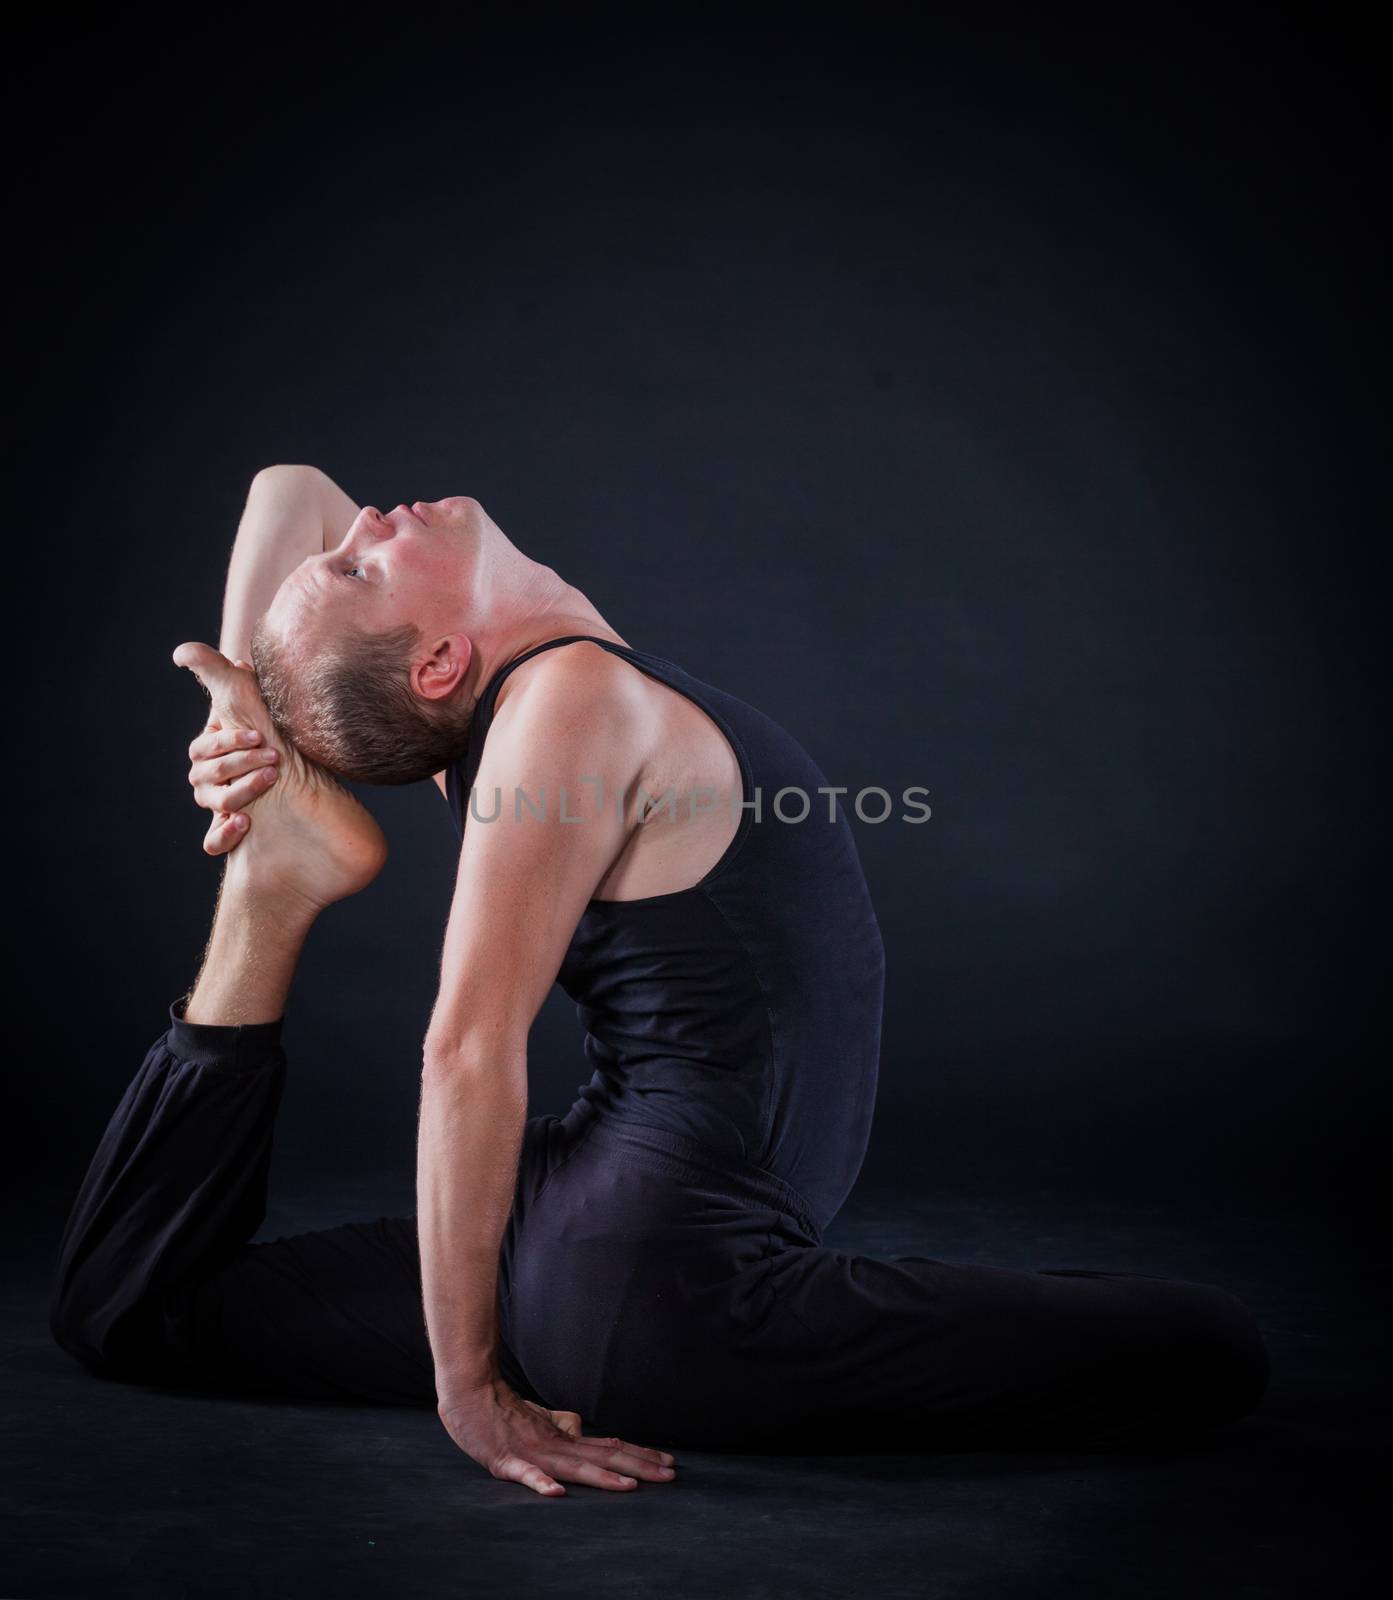 Handsome man doing yoga. Shot on black background